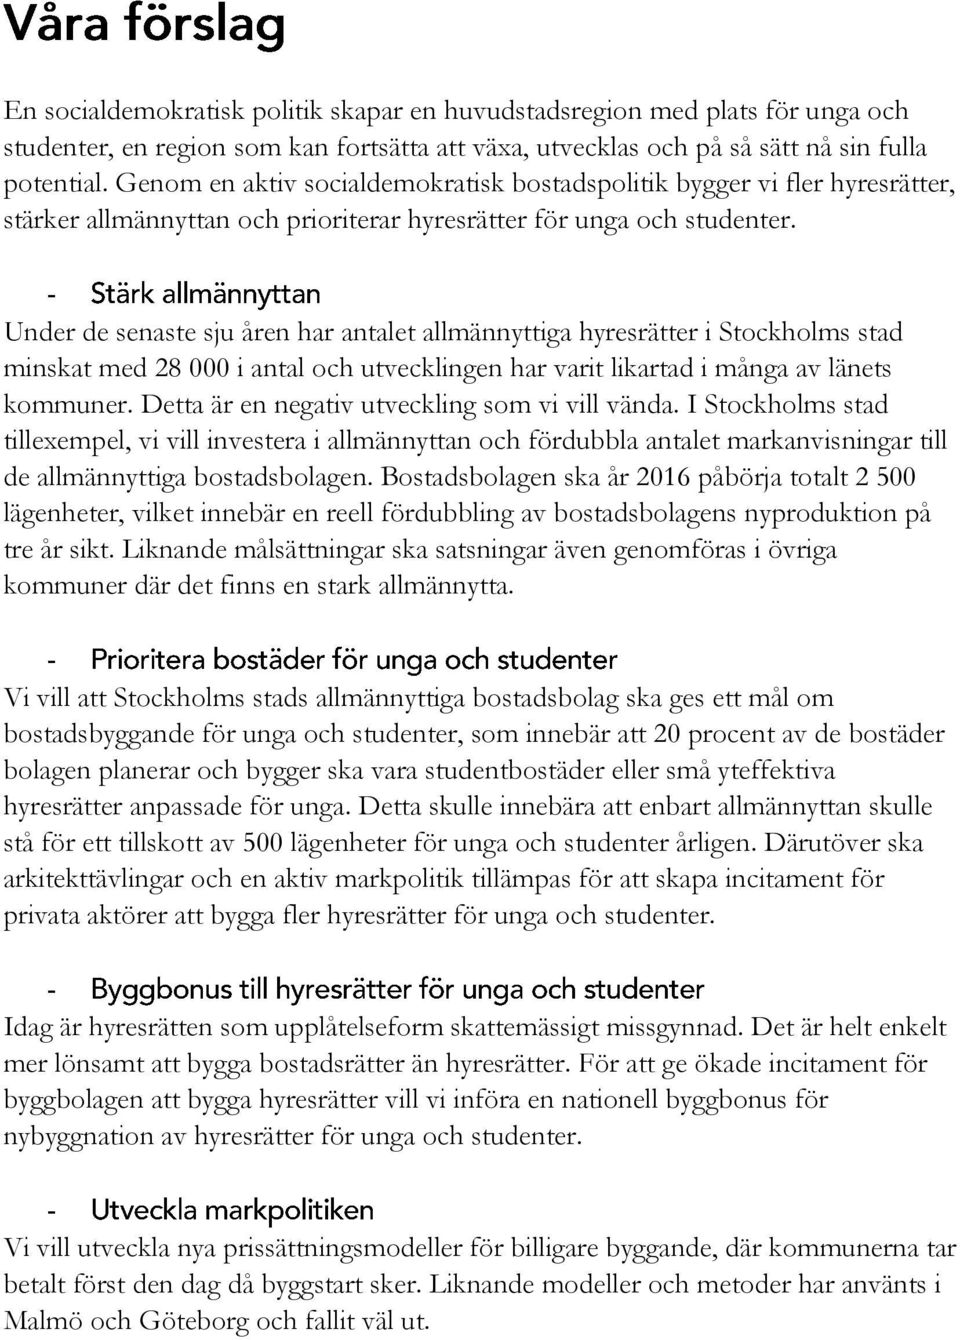 Under de senaste sju åren har antalet allmännyttiga hyresrätter i Stockholms stad minskat med 28 000 i antal och utvecklingen har varit likartad i många av länets kommuner.